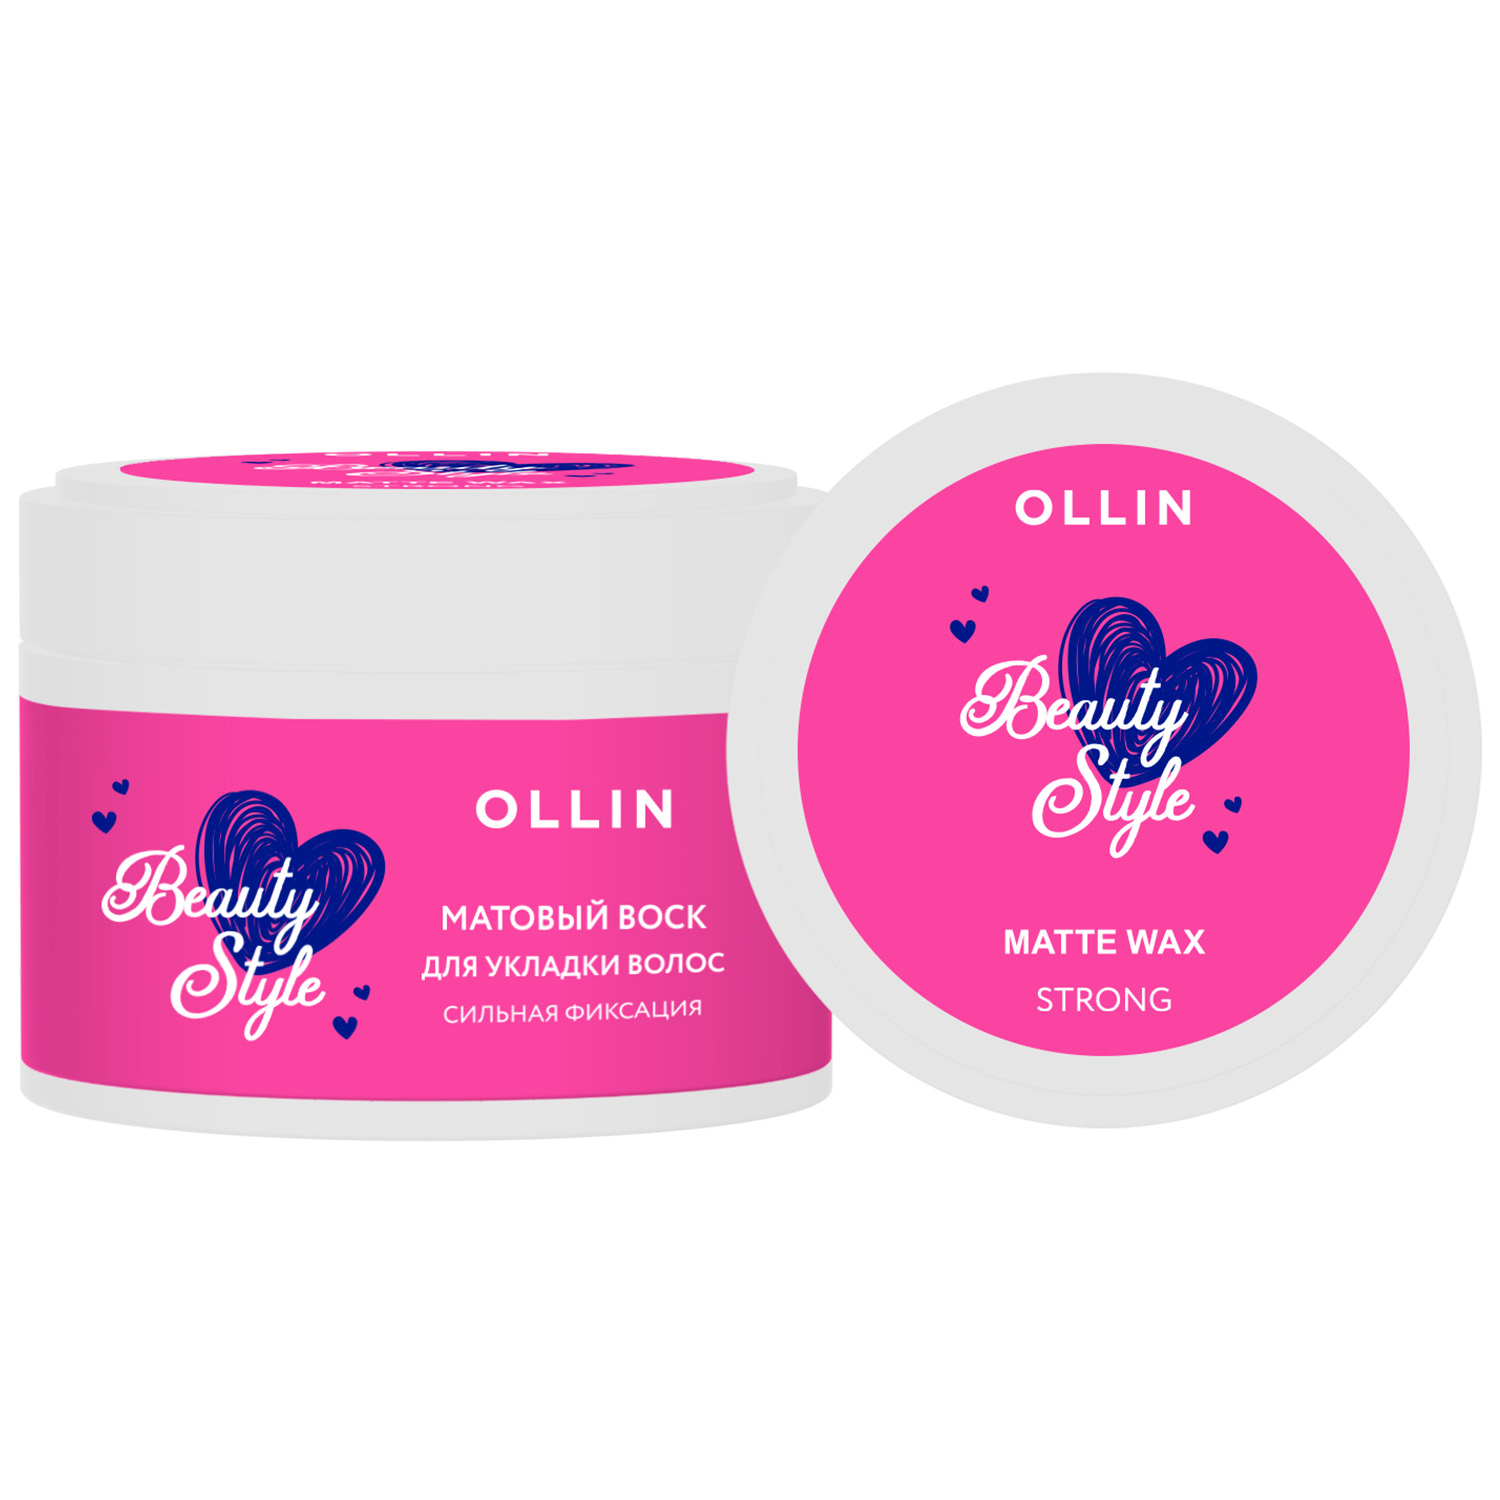 Ollin Professional Матовый воск для укладки волос сильной фиксации, 50 г (Ollin Professional, Beauty Style)